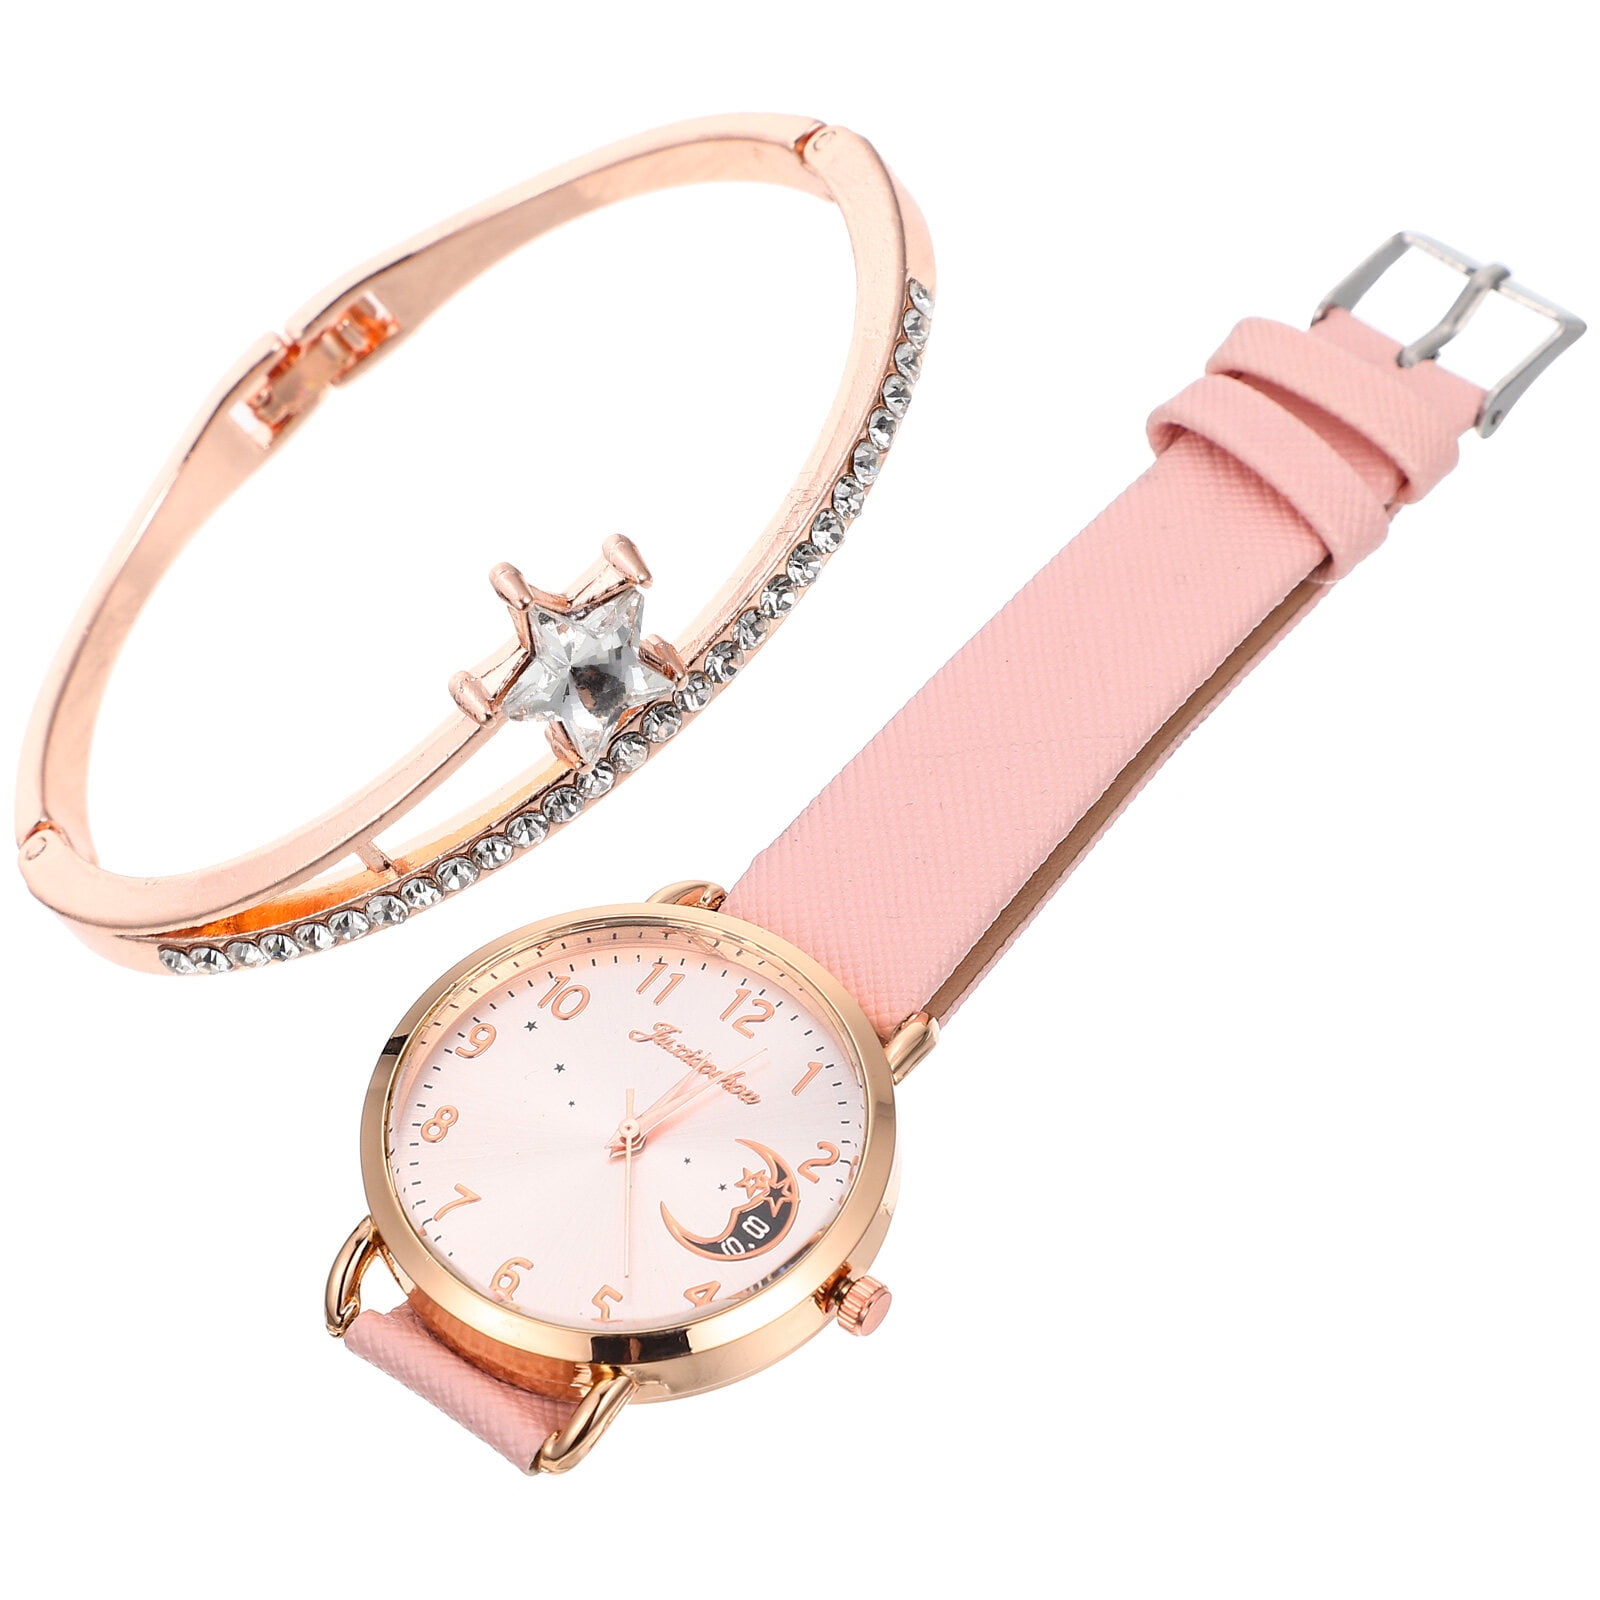 Buy Men's Golden Watch with Free Designer Ladies Watch Online at Best Price  in India on Naaptol.com